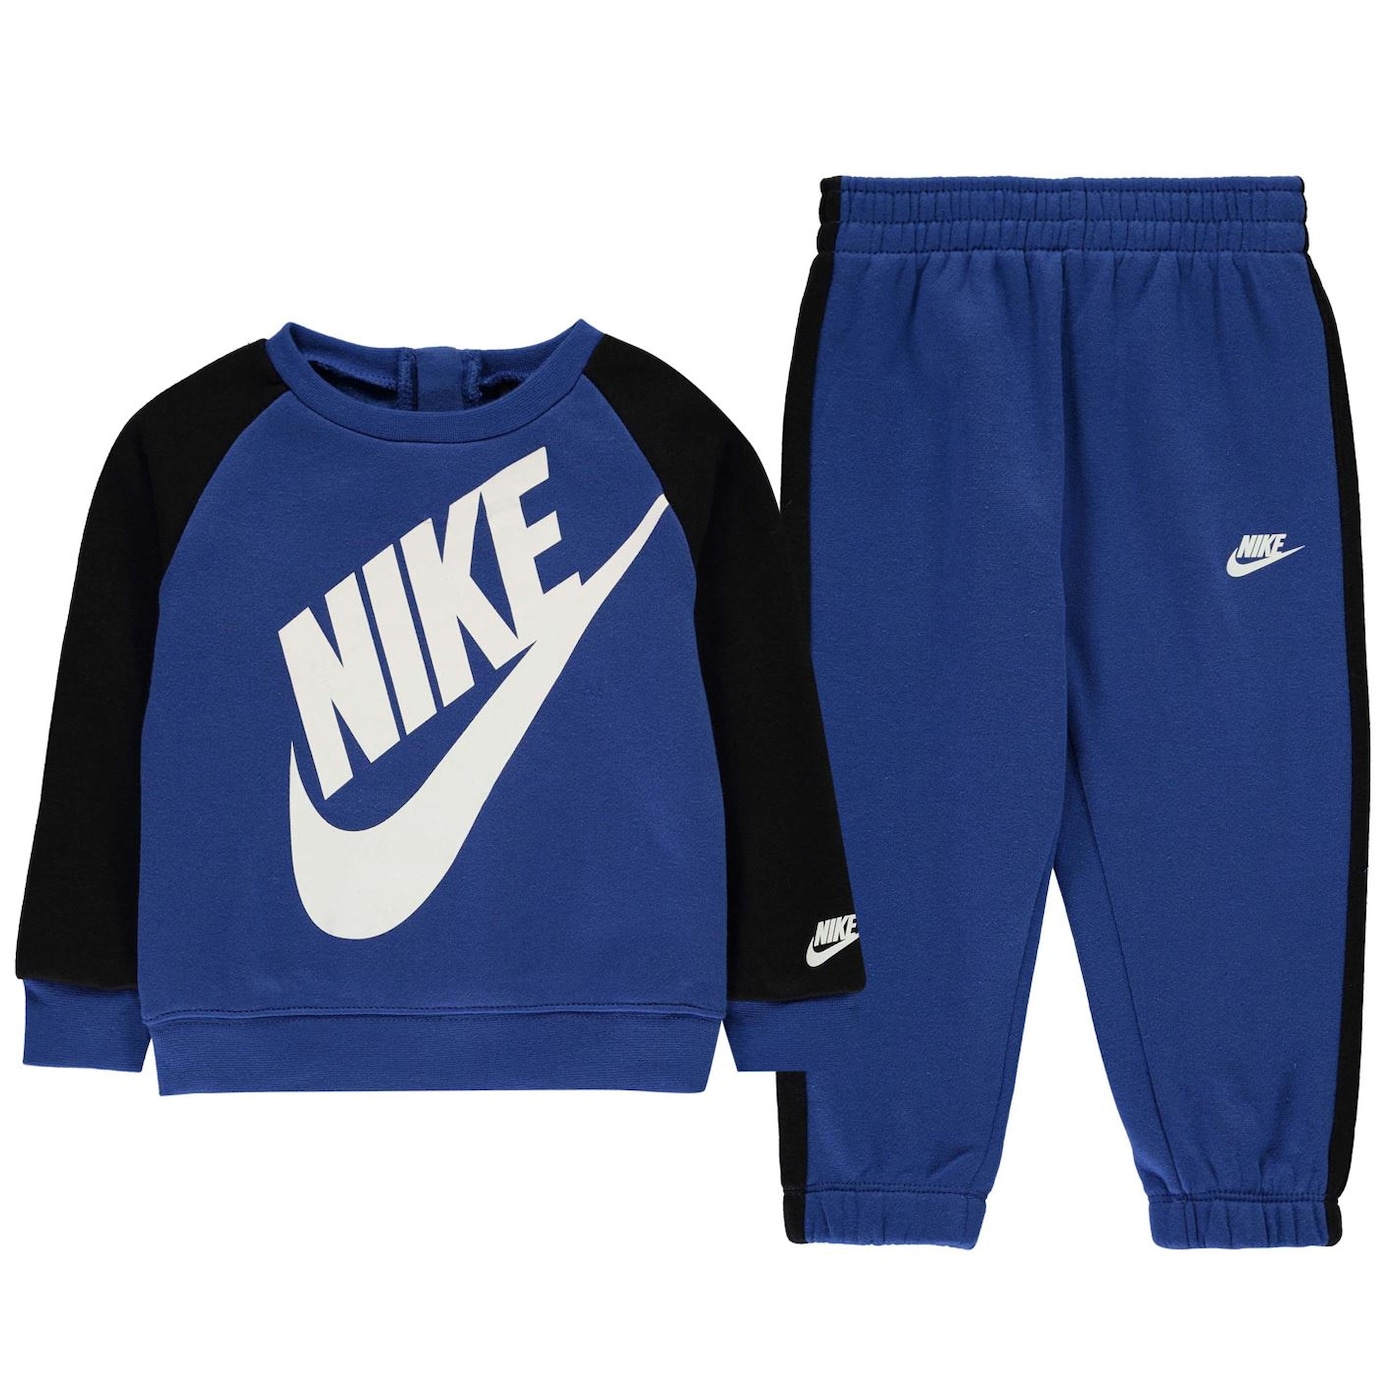 Деца  Облекло за момчета  Комплекти за момчета Nike Futura Crew Set Baby Boys 1337003-7356334